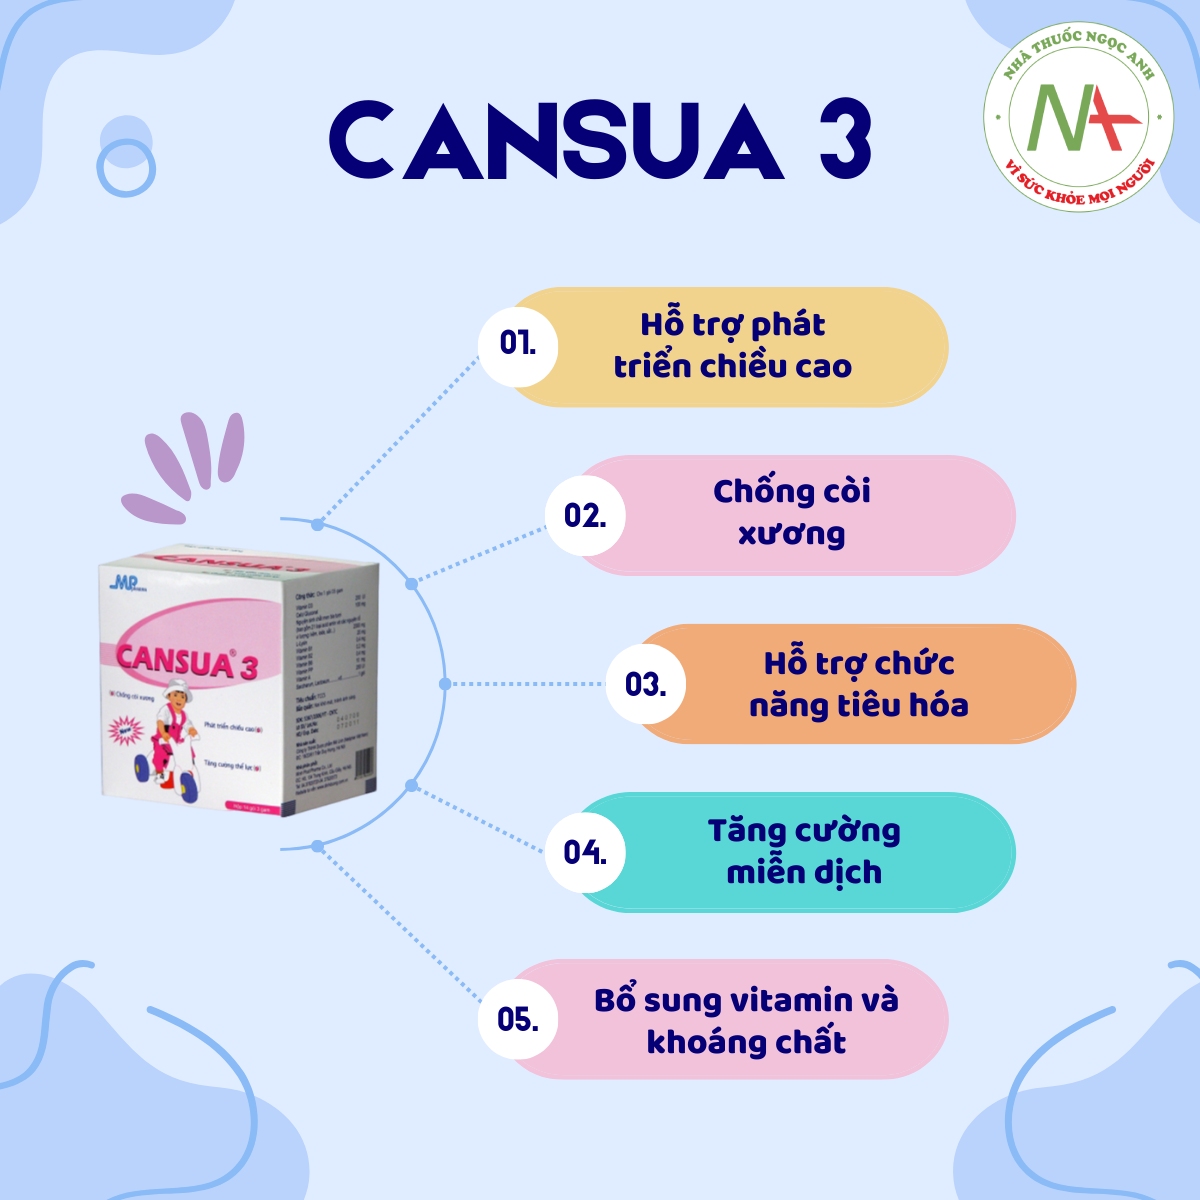 Hiệu quả của Cansua 3